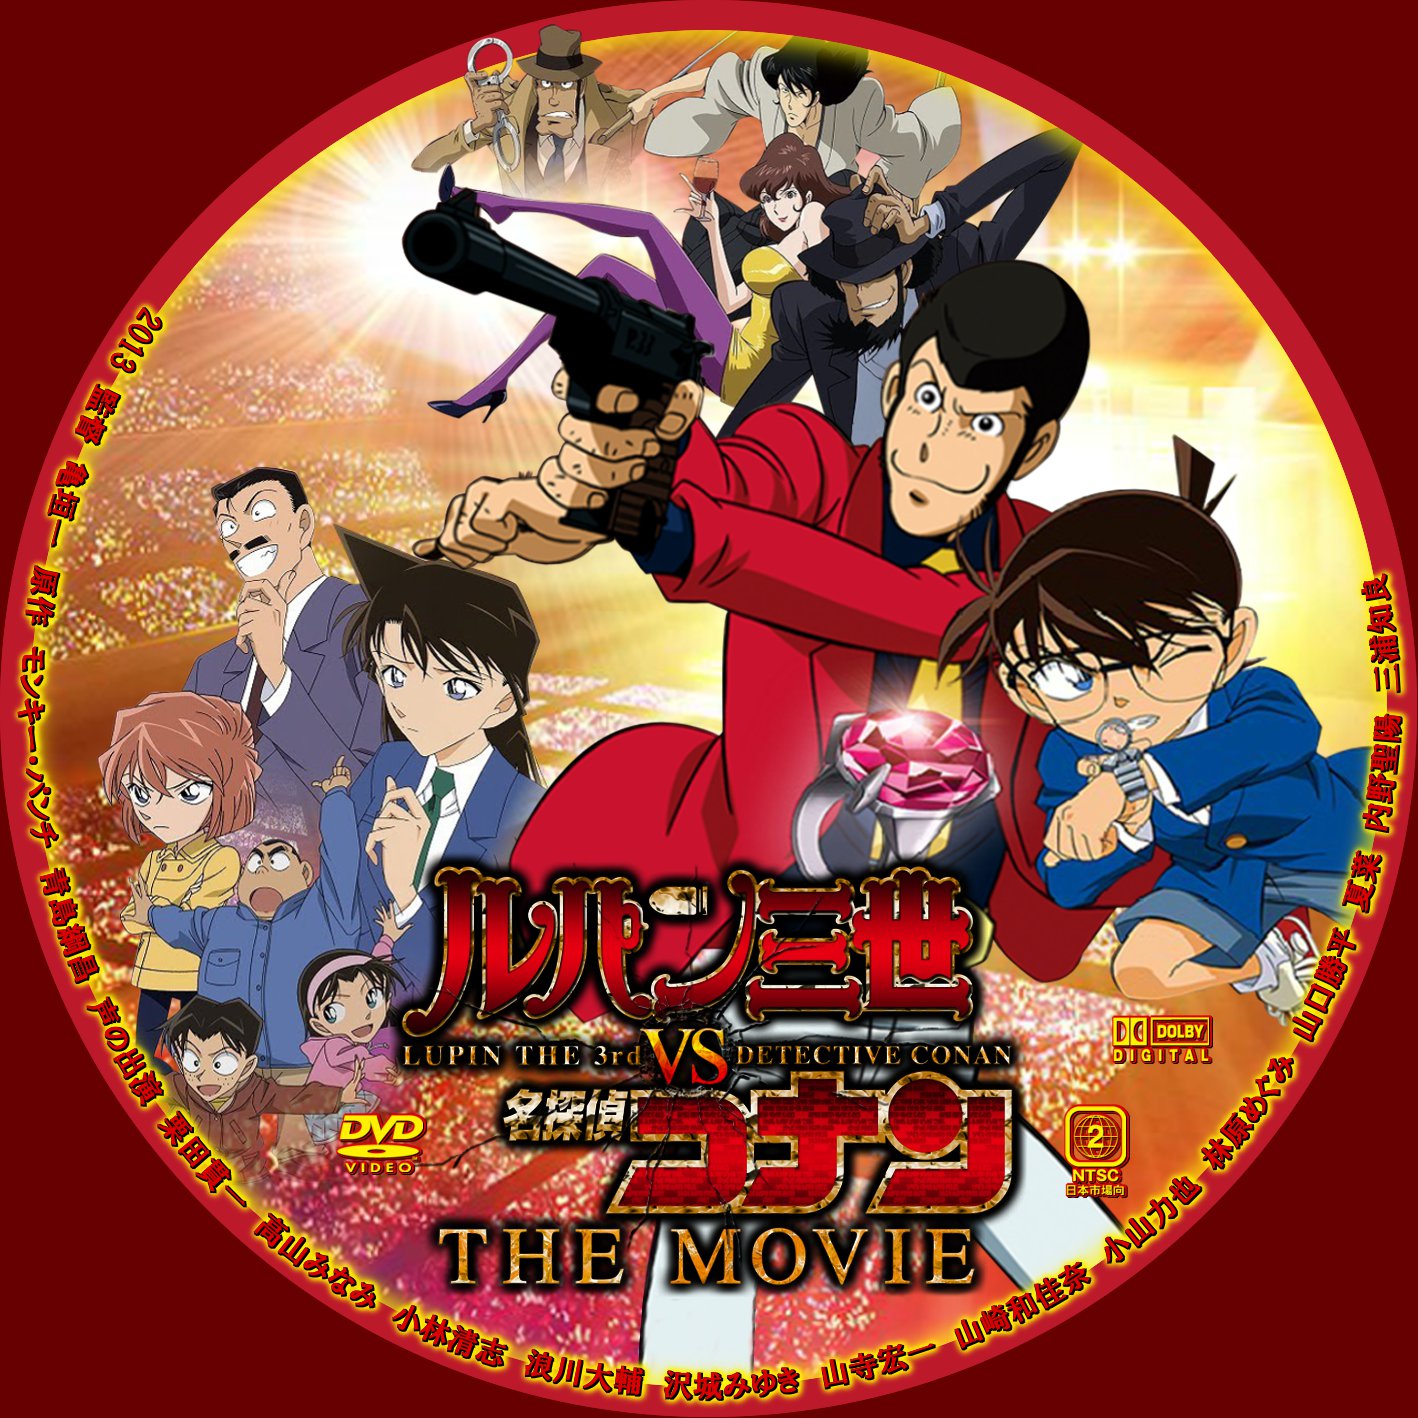 Lupin the 3rd vs Detective Conan: The Movie - Wikipedia